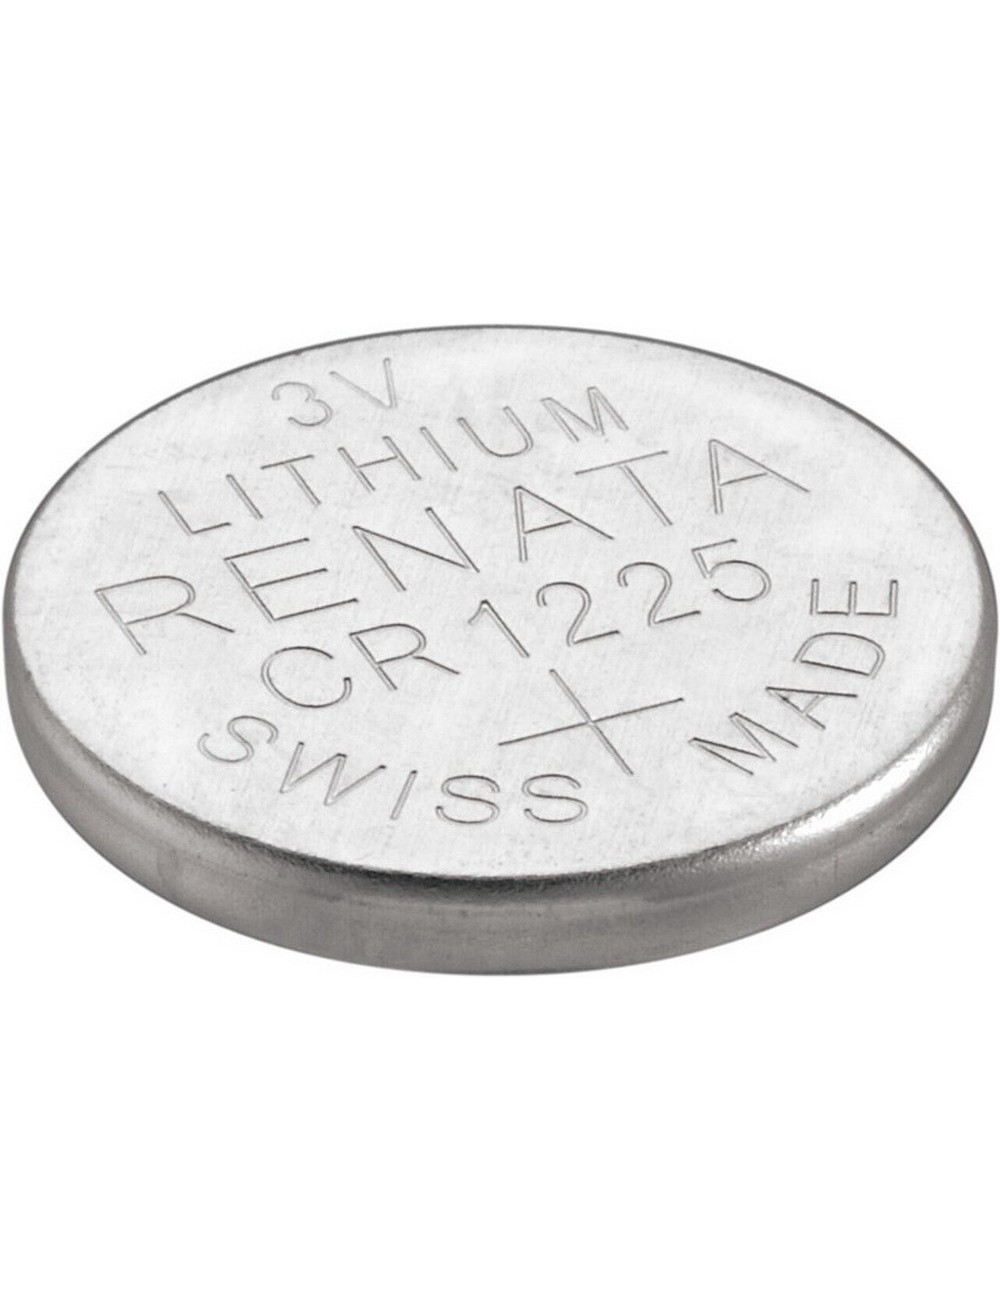 S CR1225 (CR1225) Batteries Lithium Coin Cell Renata (3V - 0,048Ah)